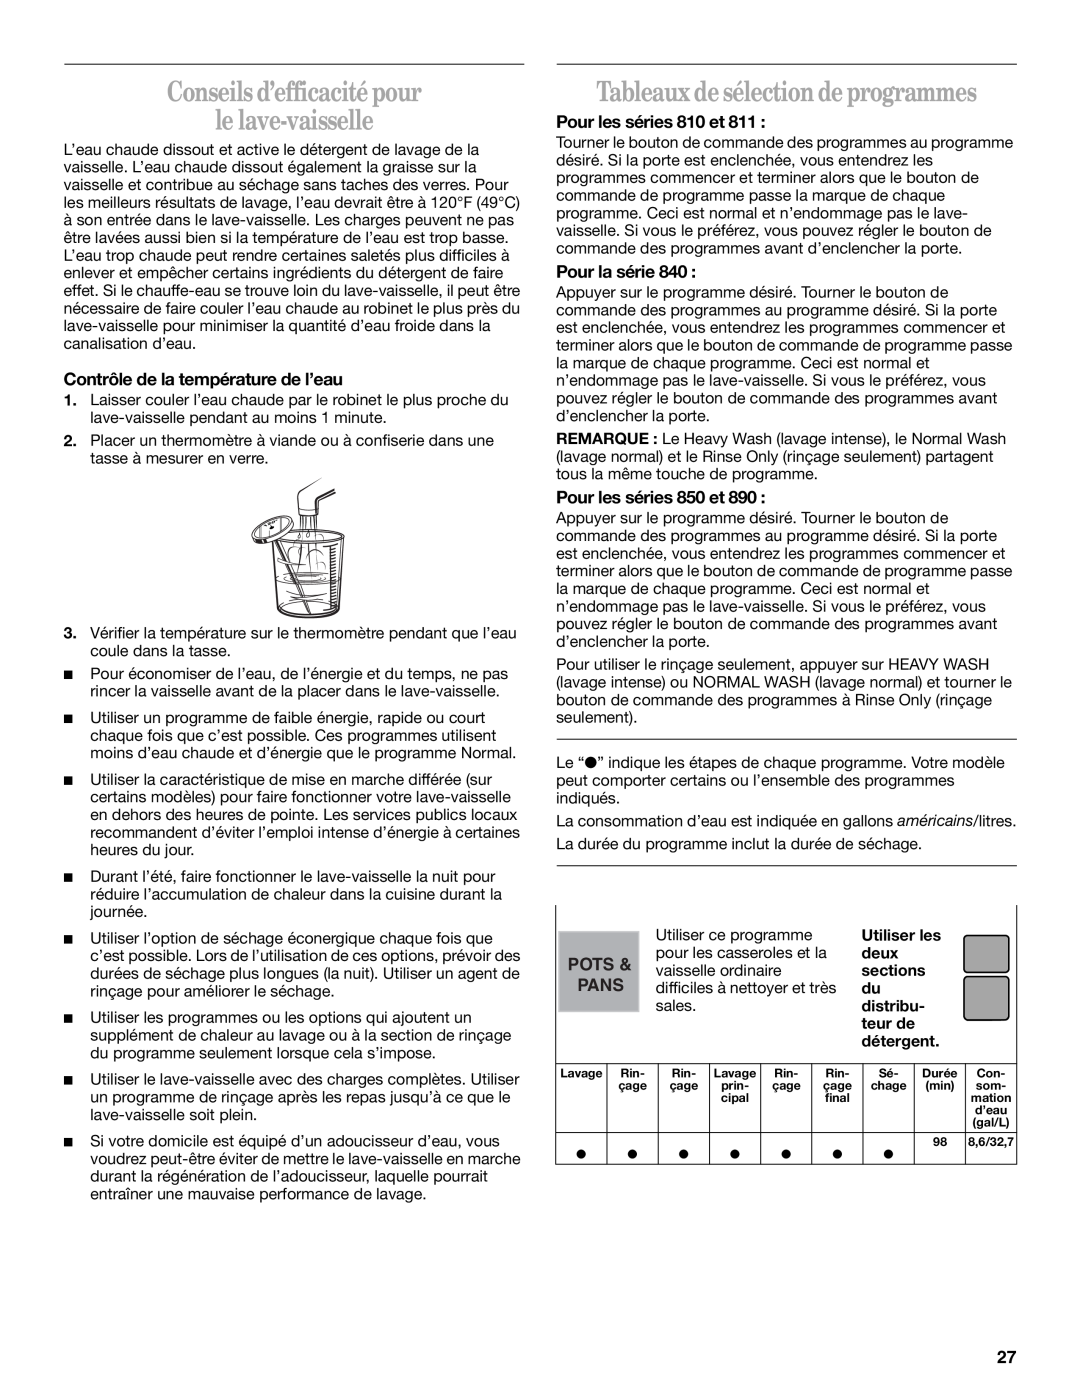 Whirlpool Series 810 Conseils d’efficacité pour le lave-vaisselle, Tableaux de sélection de programmes, Pour la série 